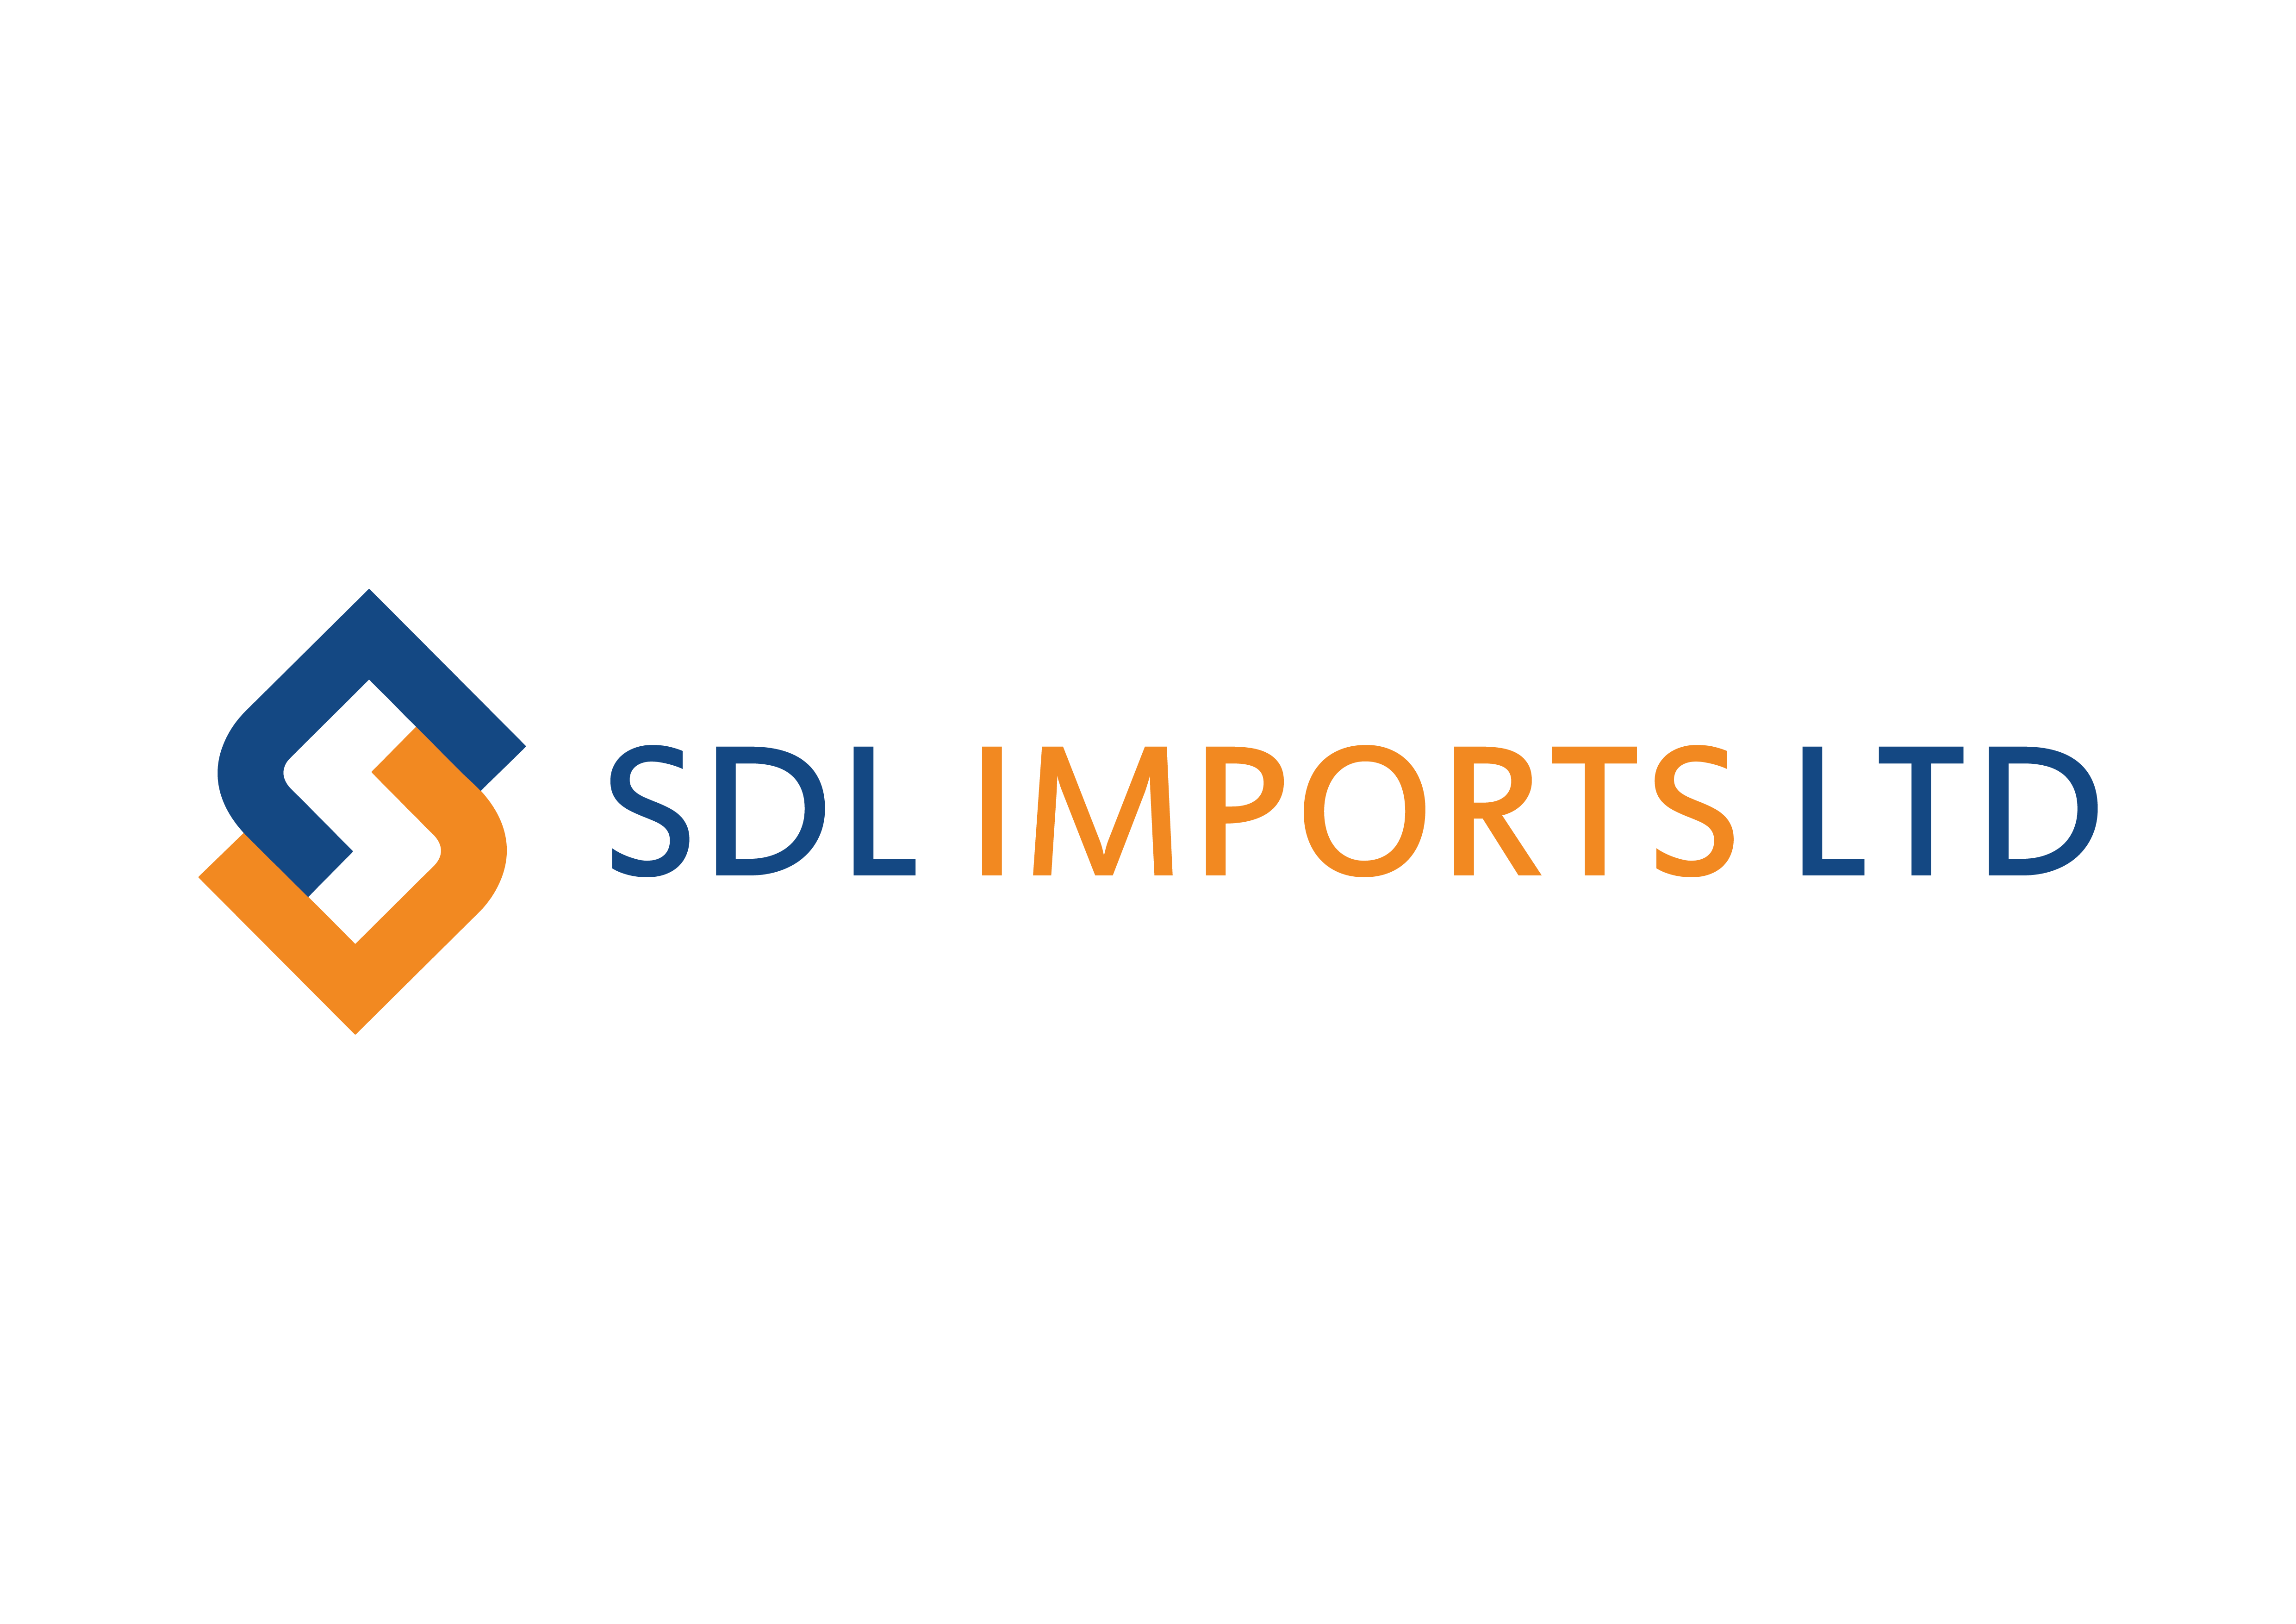 SDL Imports Ltd